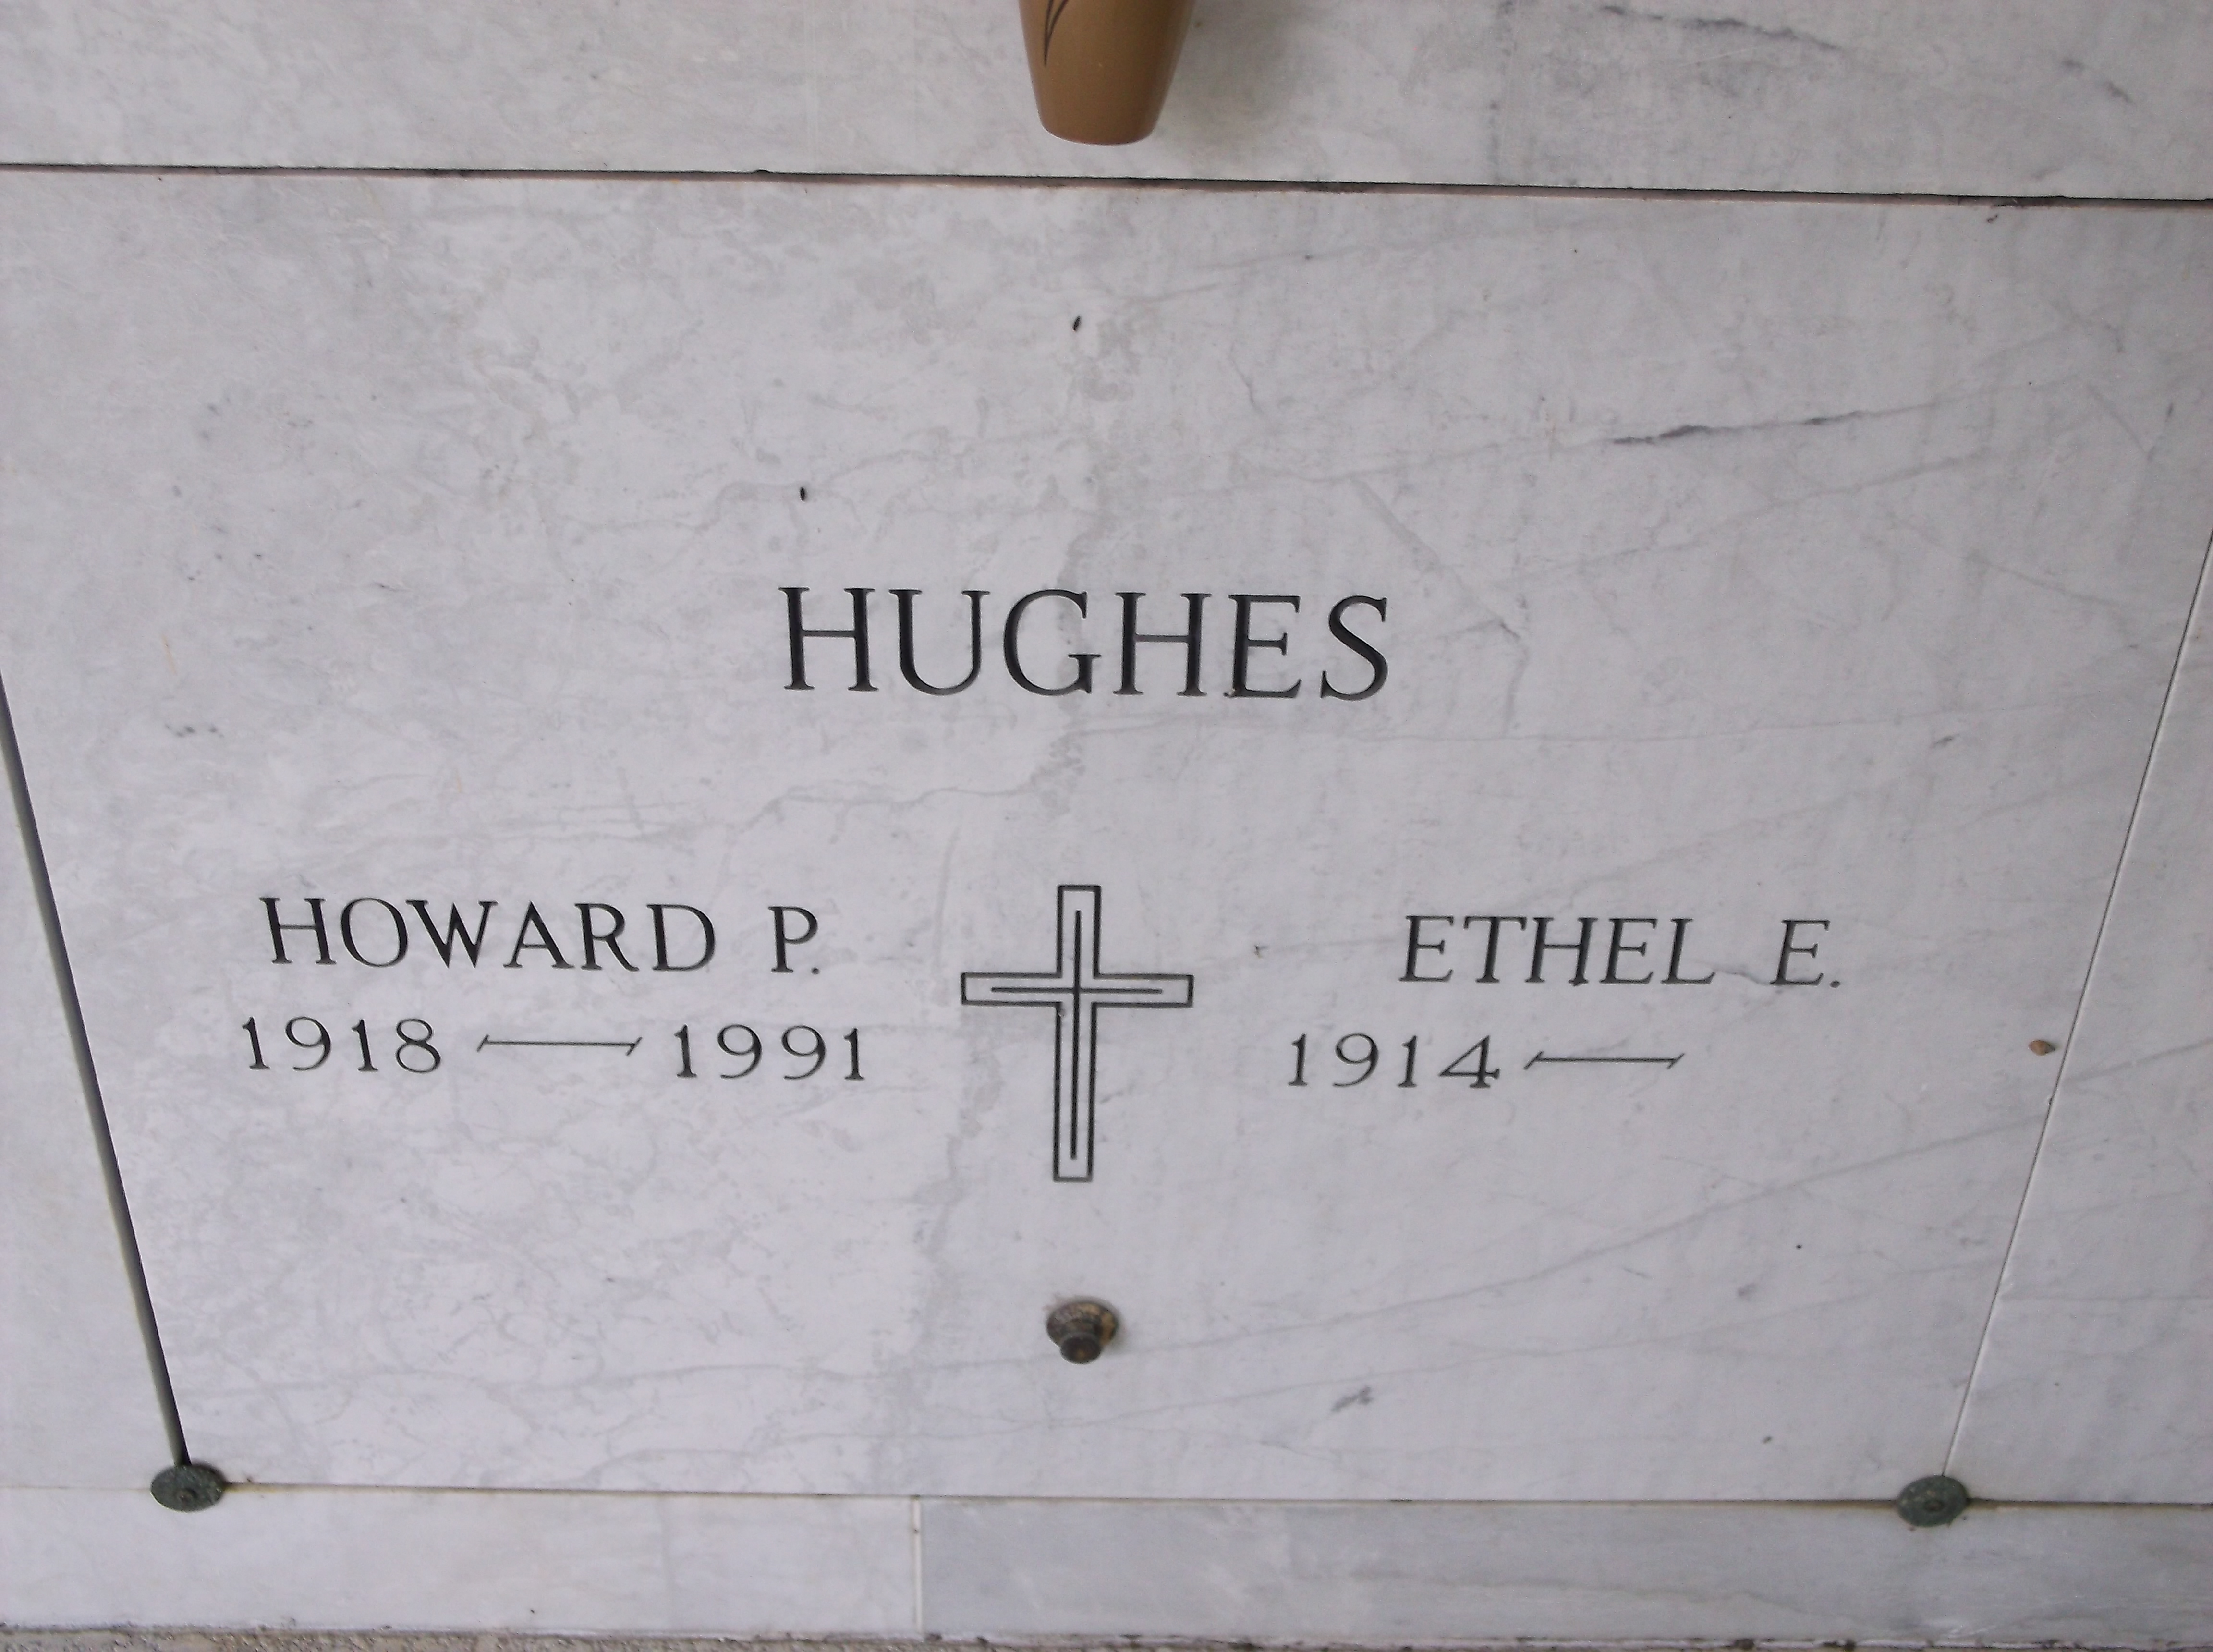 Ethel E Hughes